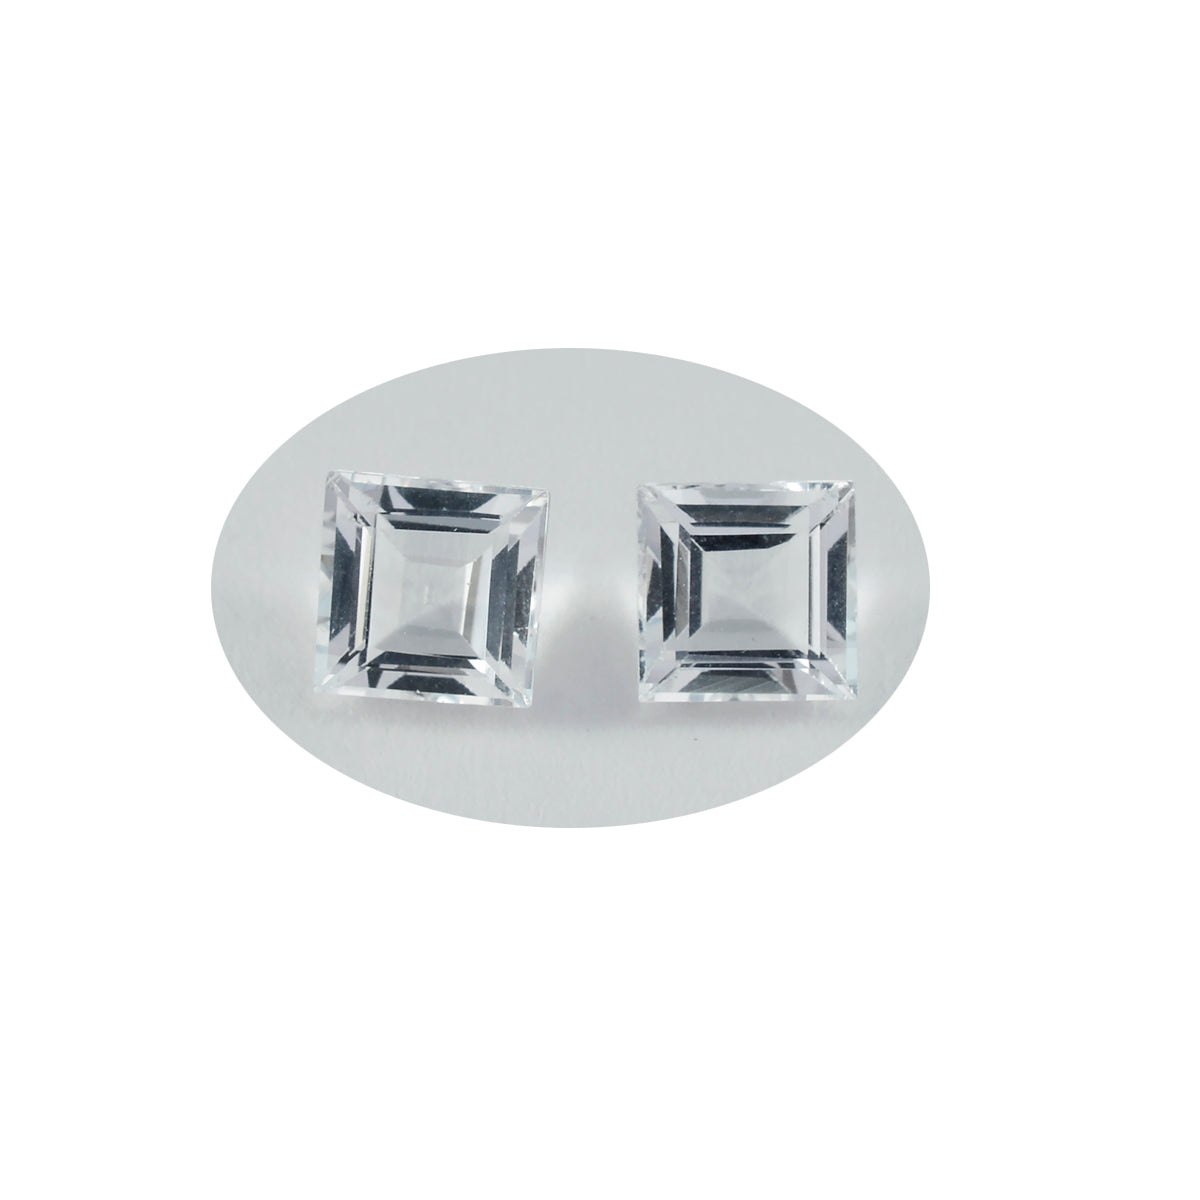 riyogems 1шт белый кристалл кварца ограненный 11x11 мм квадратной формы драгоценный камень удивительного качества